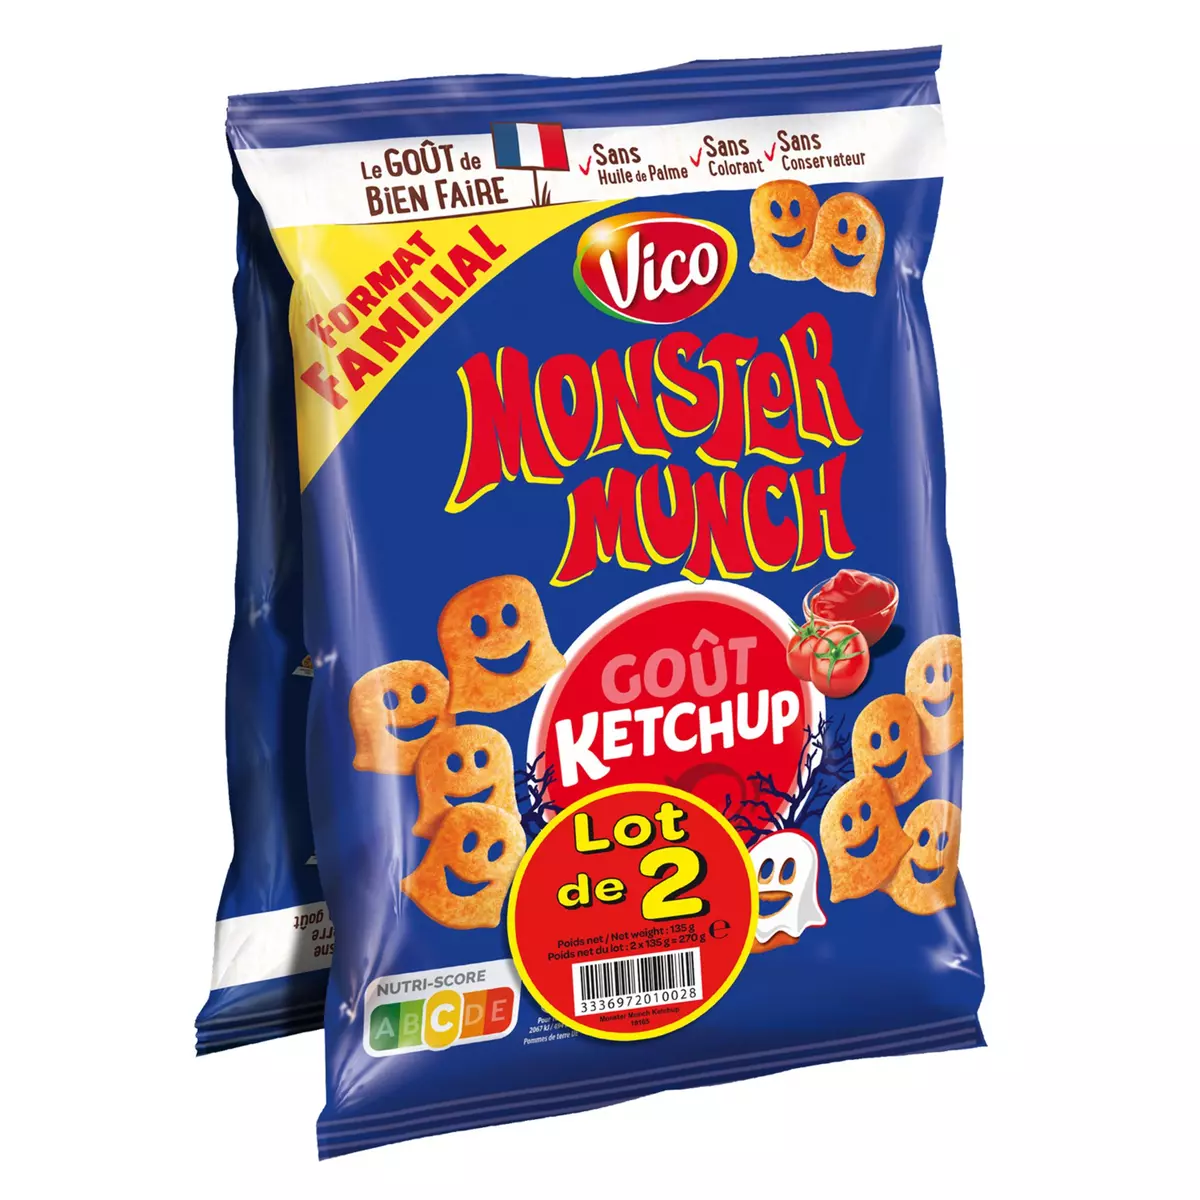 MONSTER MUNCH Biscuits soufflés goût ketchup lot de 2 2x135g